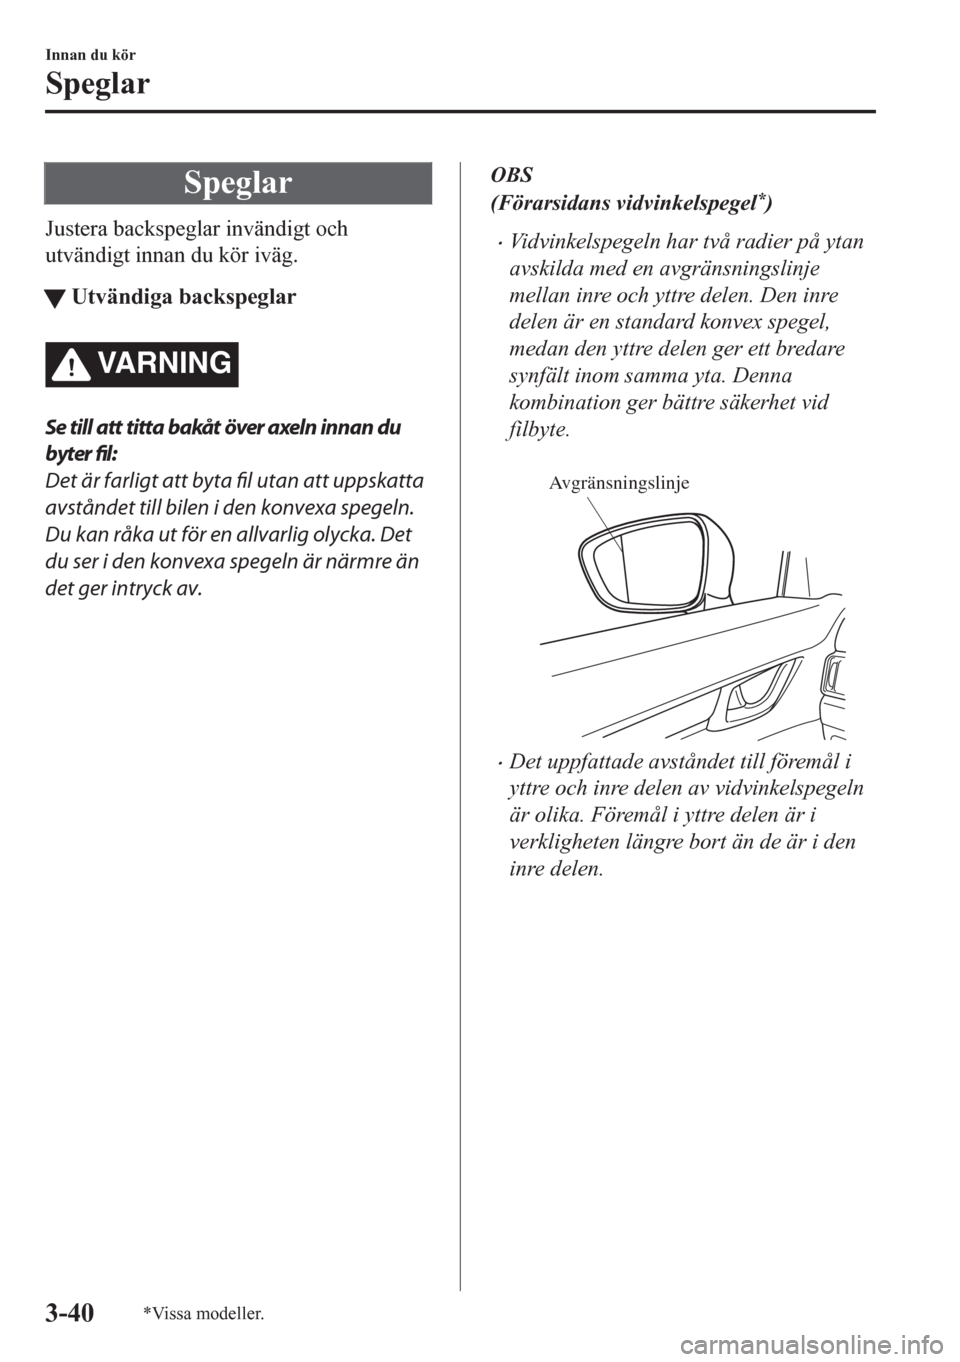 MAZDA MODEL CX-5 2018  Ägarmanual (in Swedish) Speglar
Justera backspeglar invändigt och
utvändigt innan du kör iväg.
tUtvändiga backspeglar
VARNING
Se till att titta bakåt över axeln innan du
byter fil:
Det är farligt att byta 
fil utan a